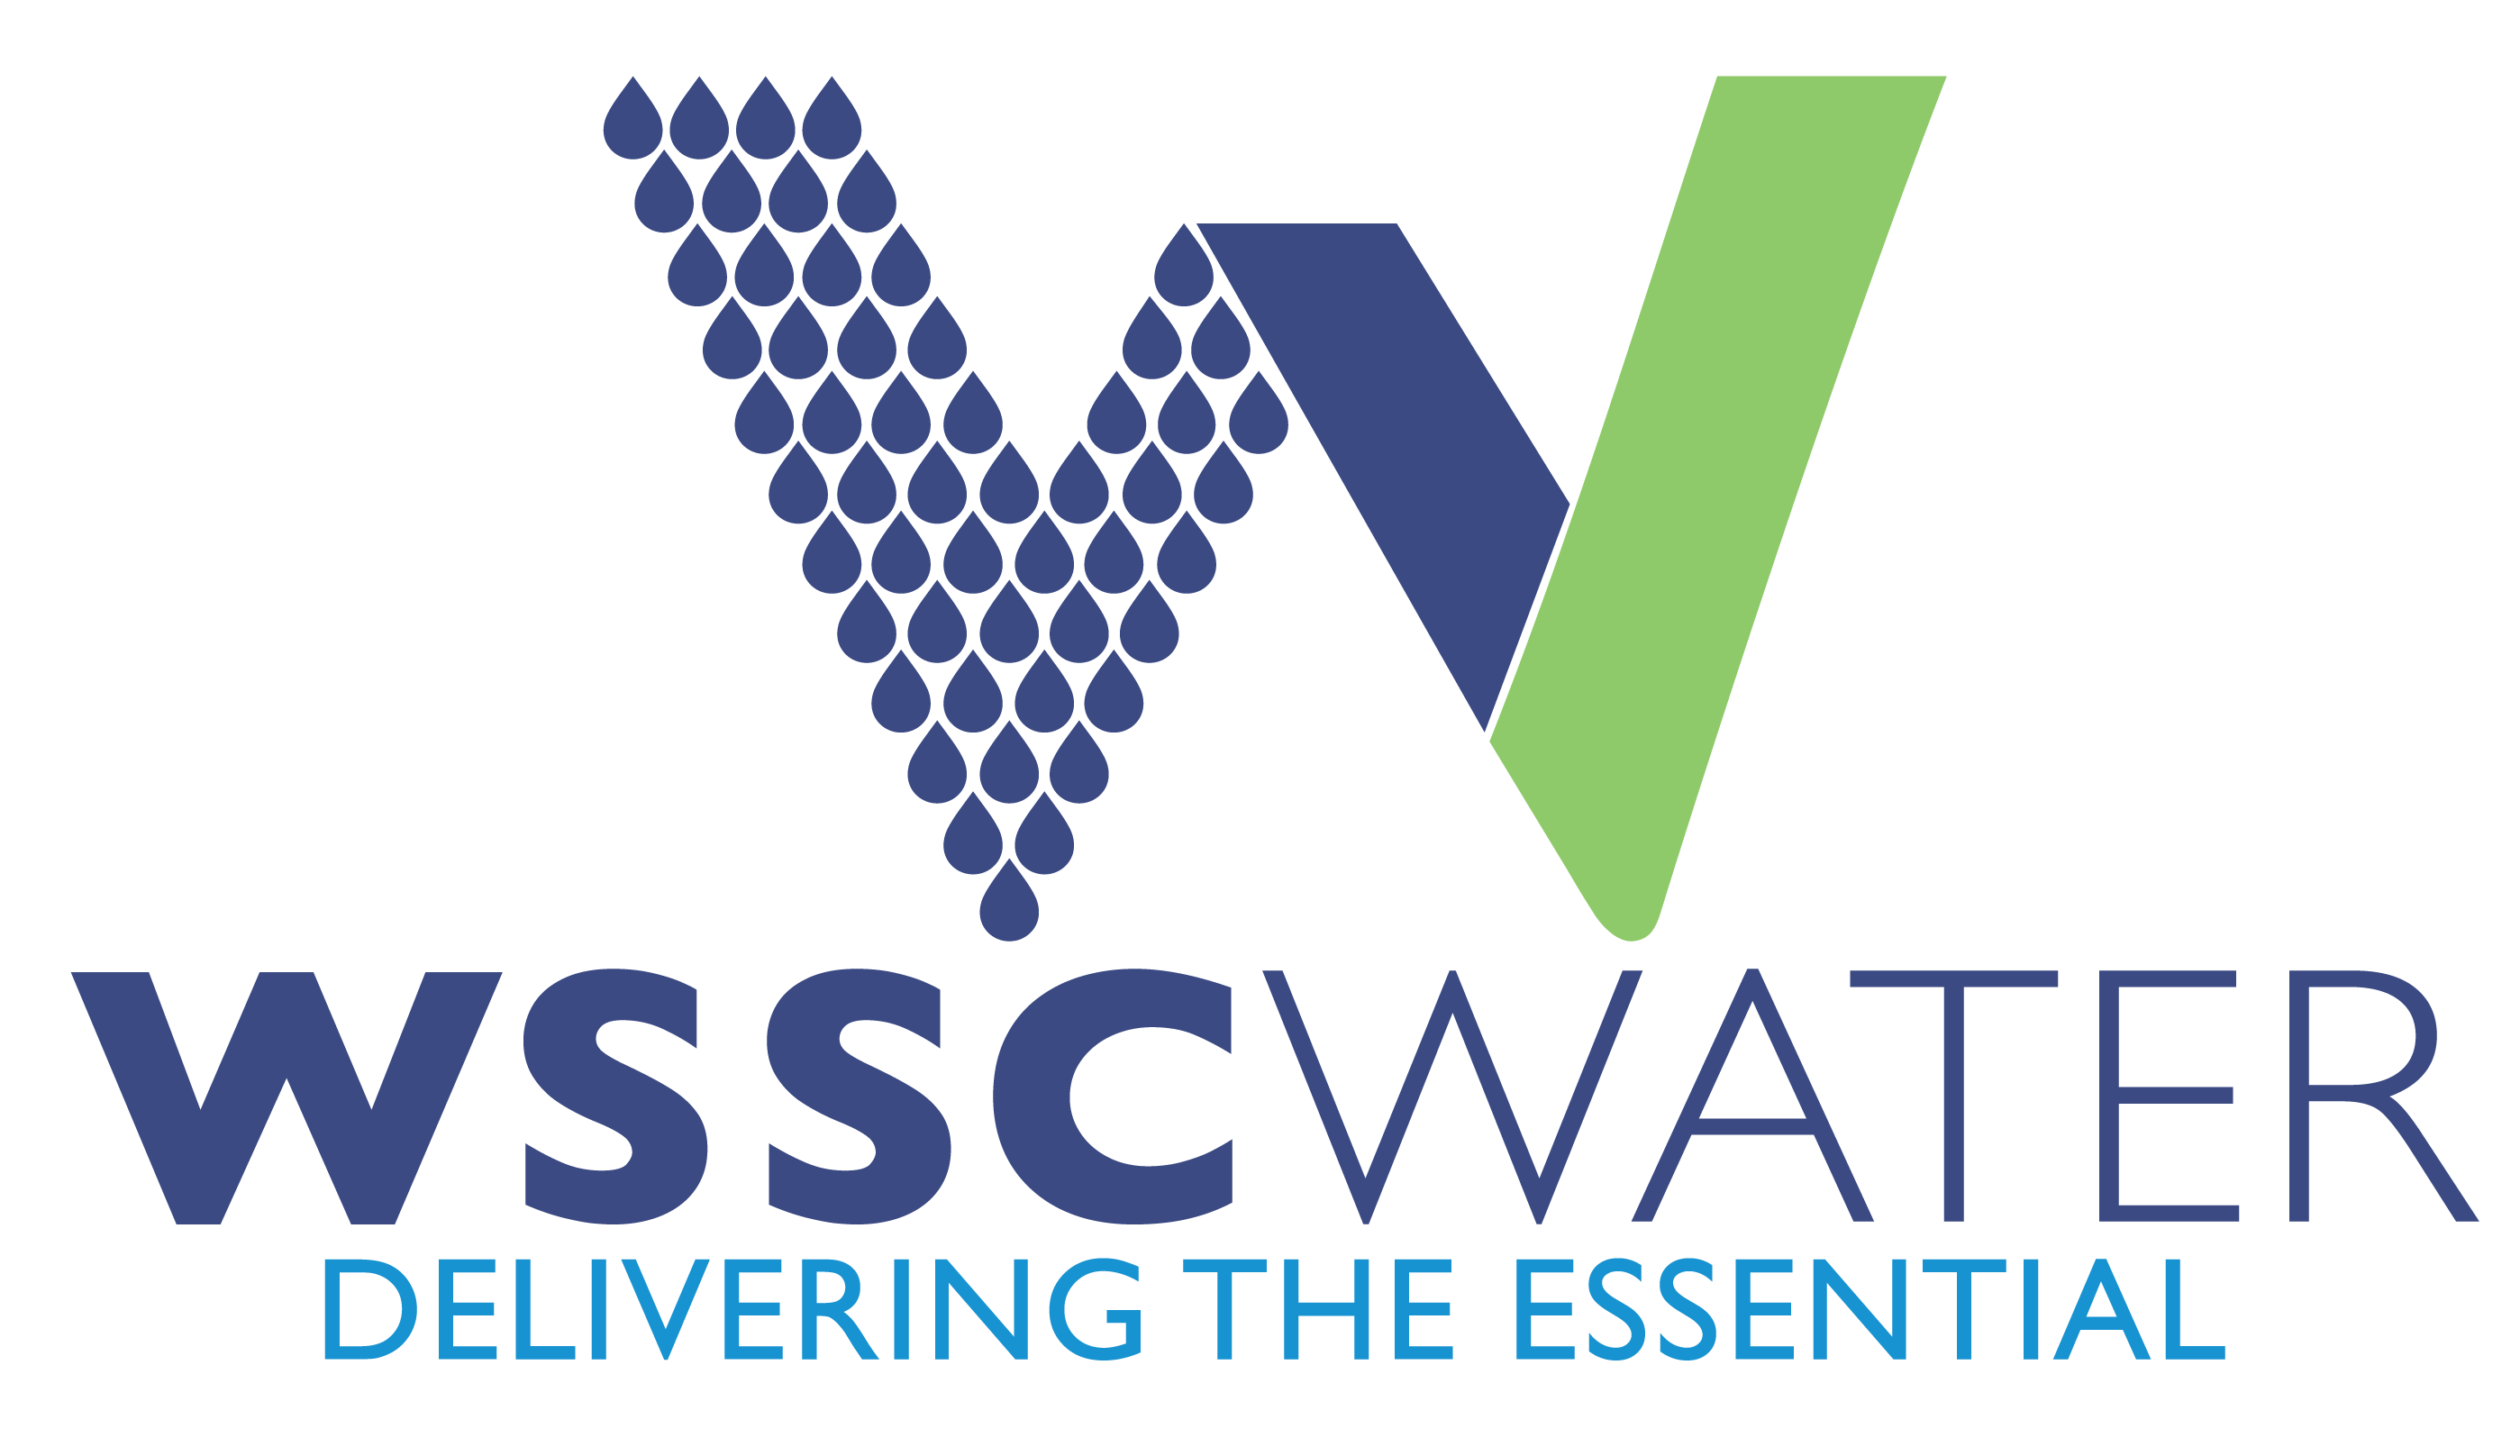 WSSC Water